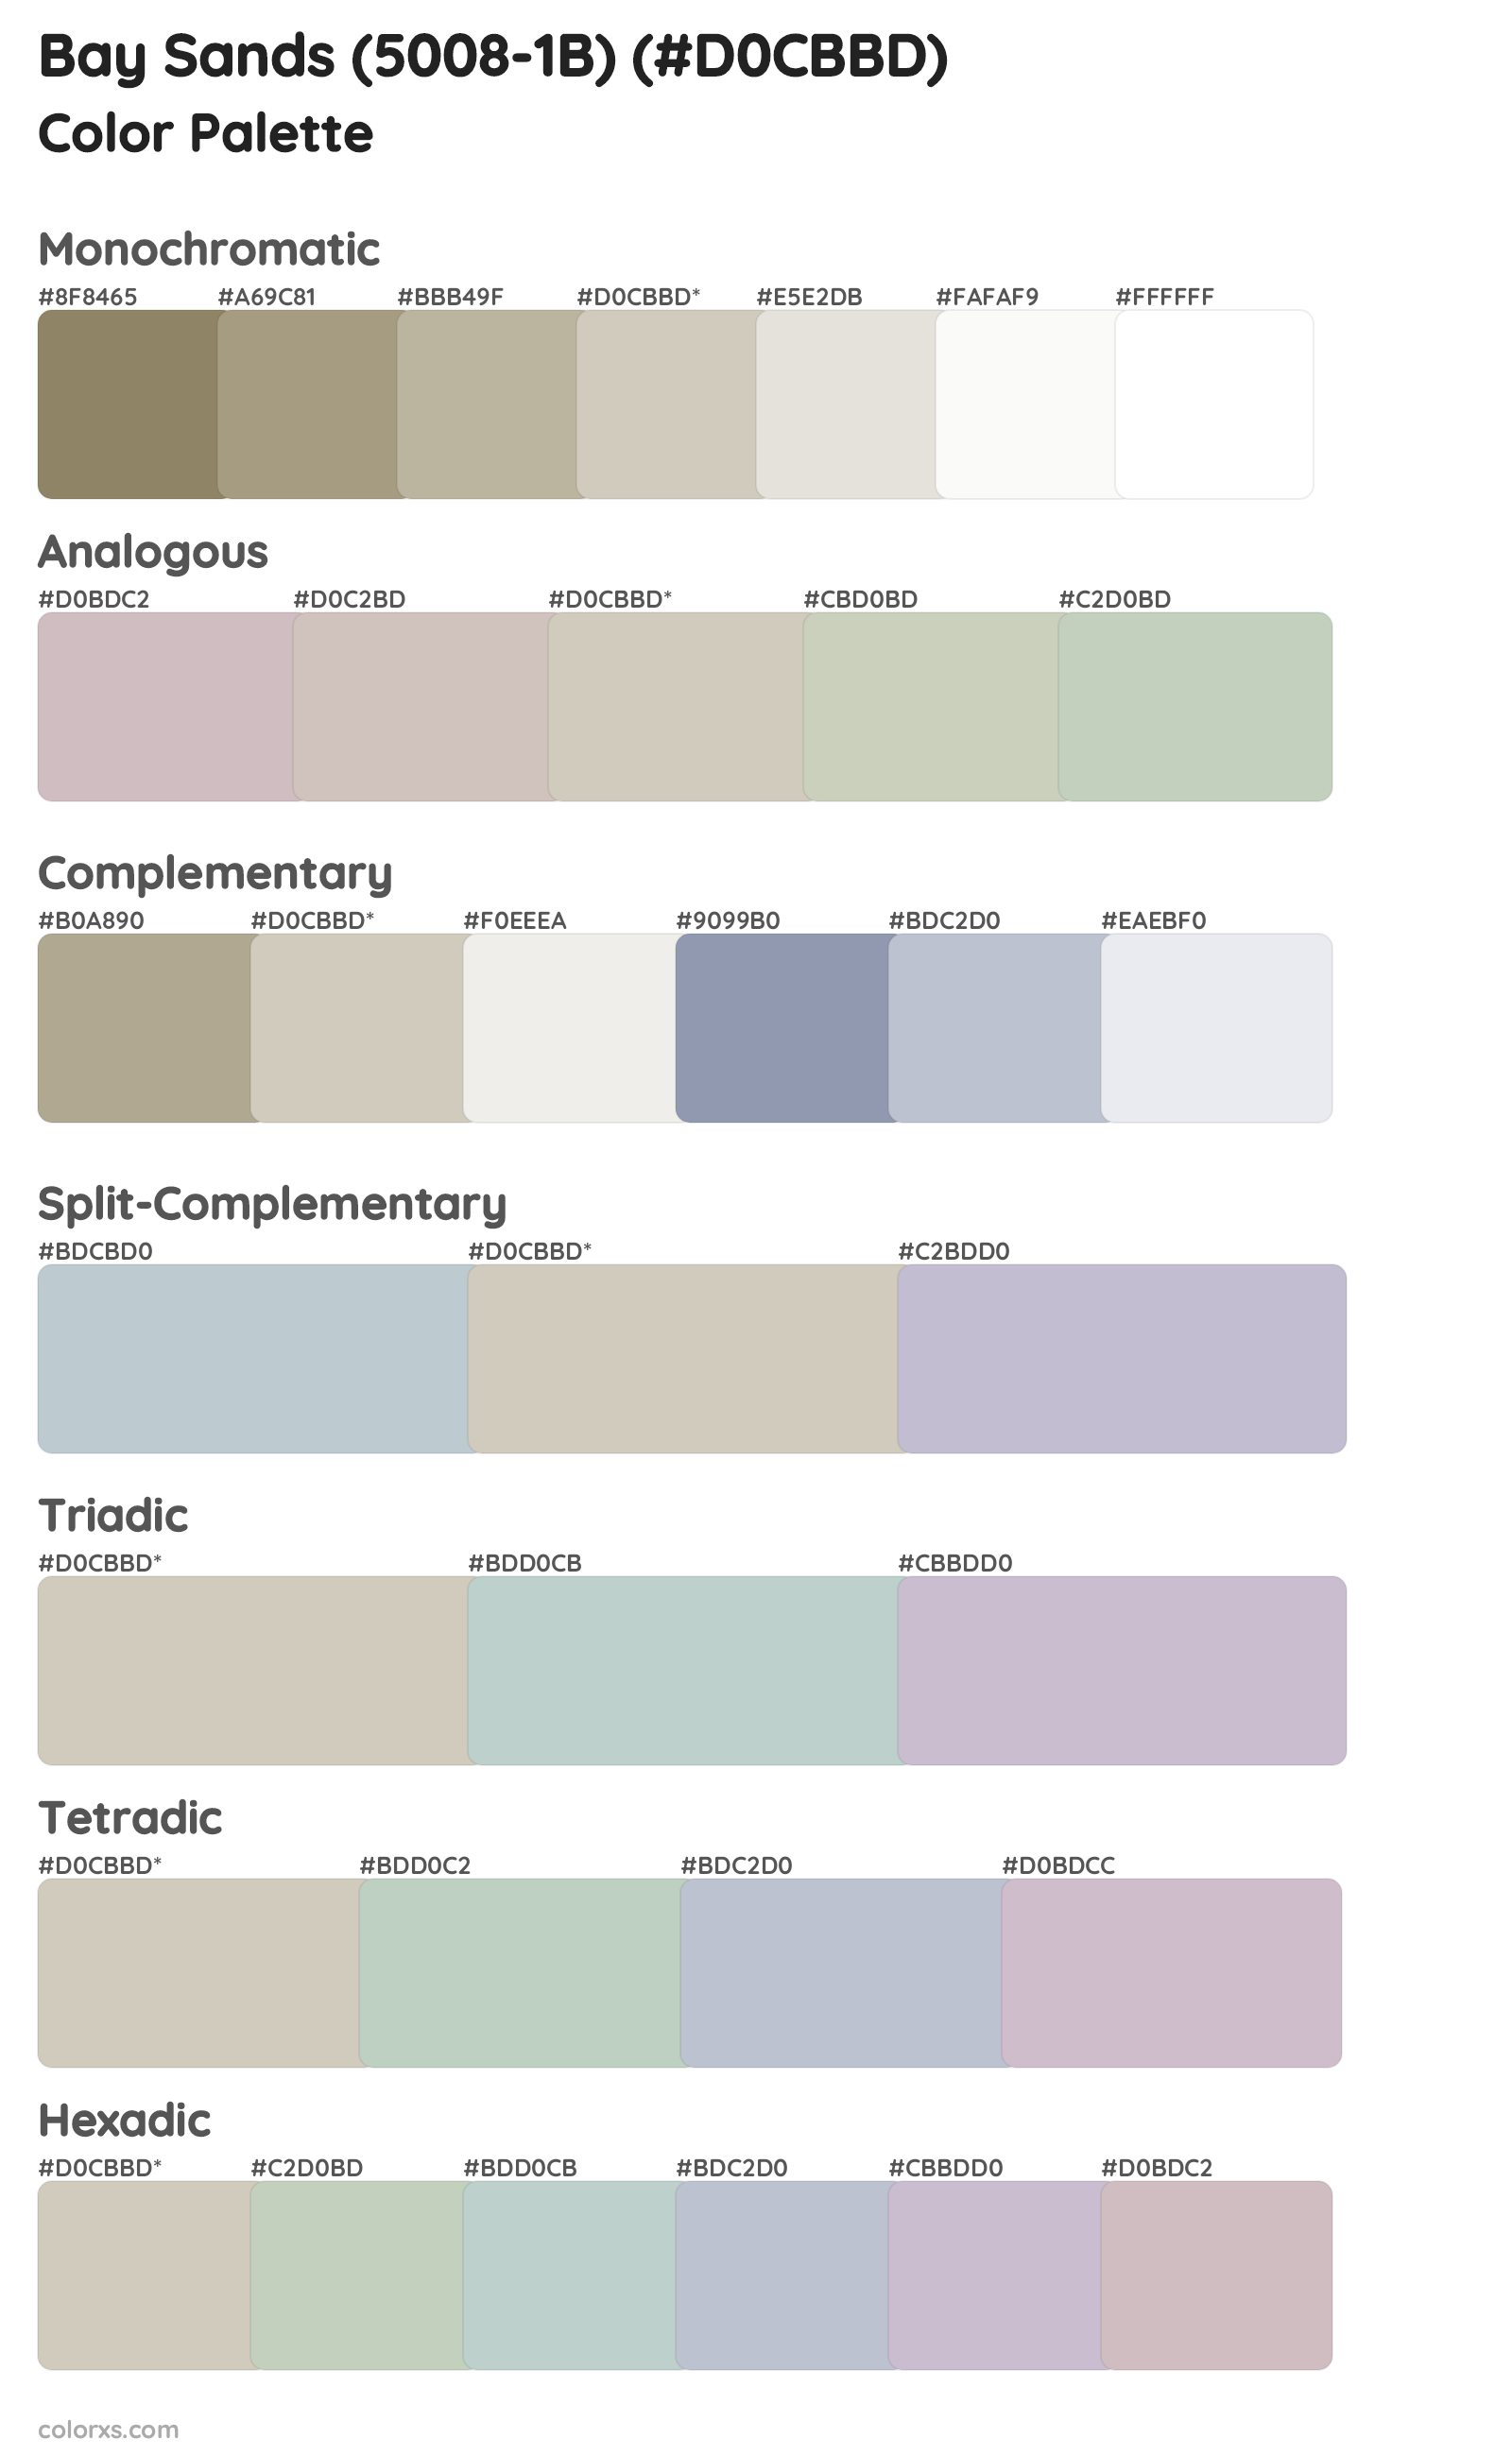 Bay Sands (5008-1B) Color Scheme Palettes